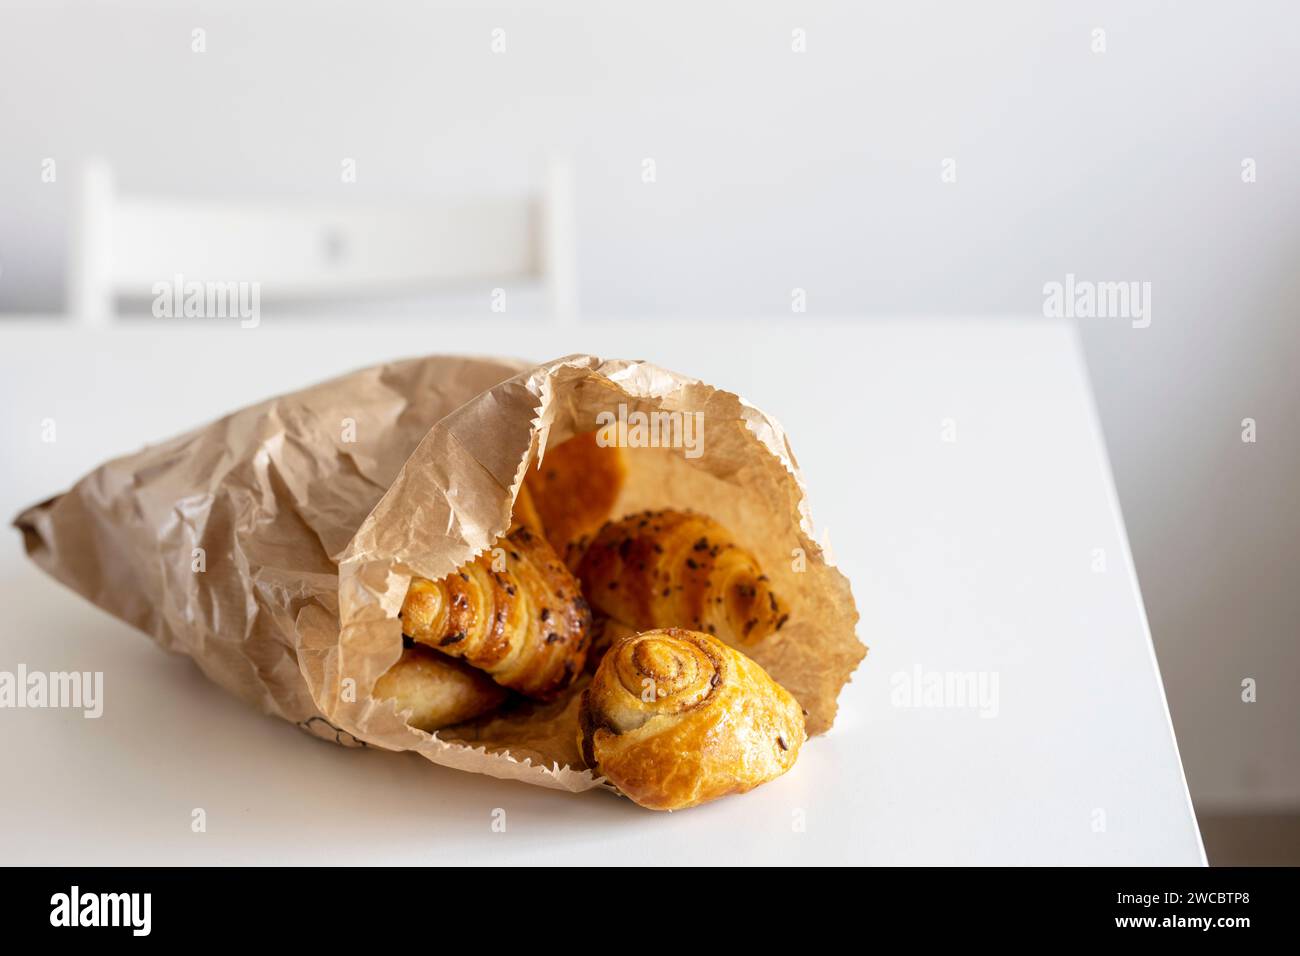 Frisches Gebäck – Croissants mit Schokoladenstückchen, Mohnbrötchen auf einem weißen Blatt Papier auf dem Tisch. Für Text platzieren Stockfoto